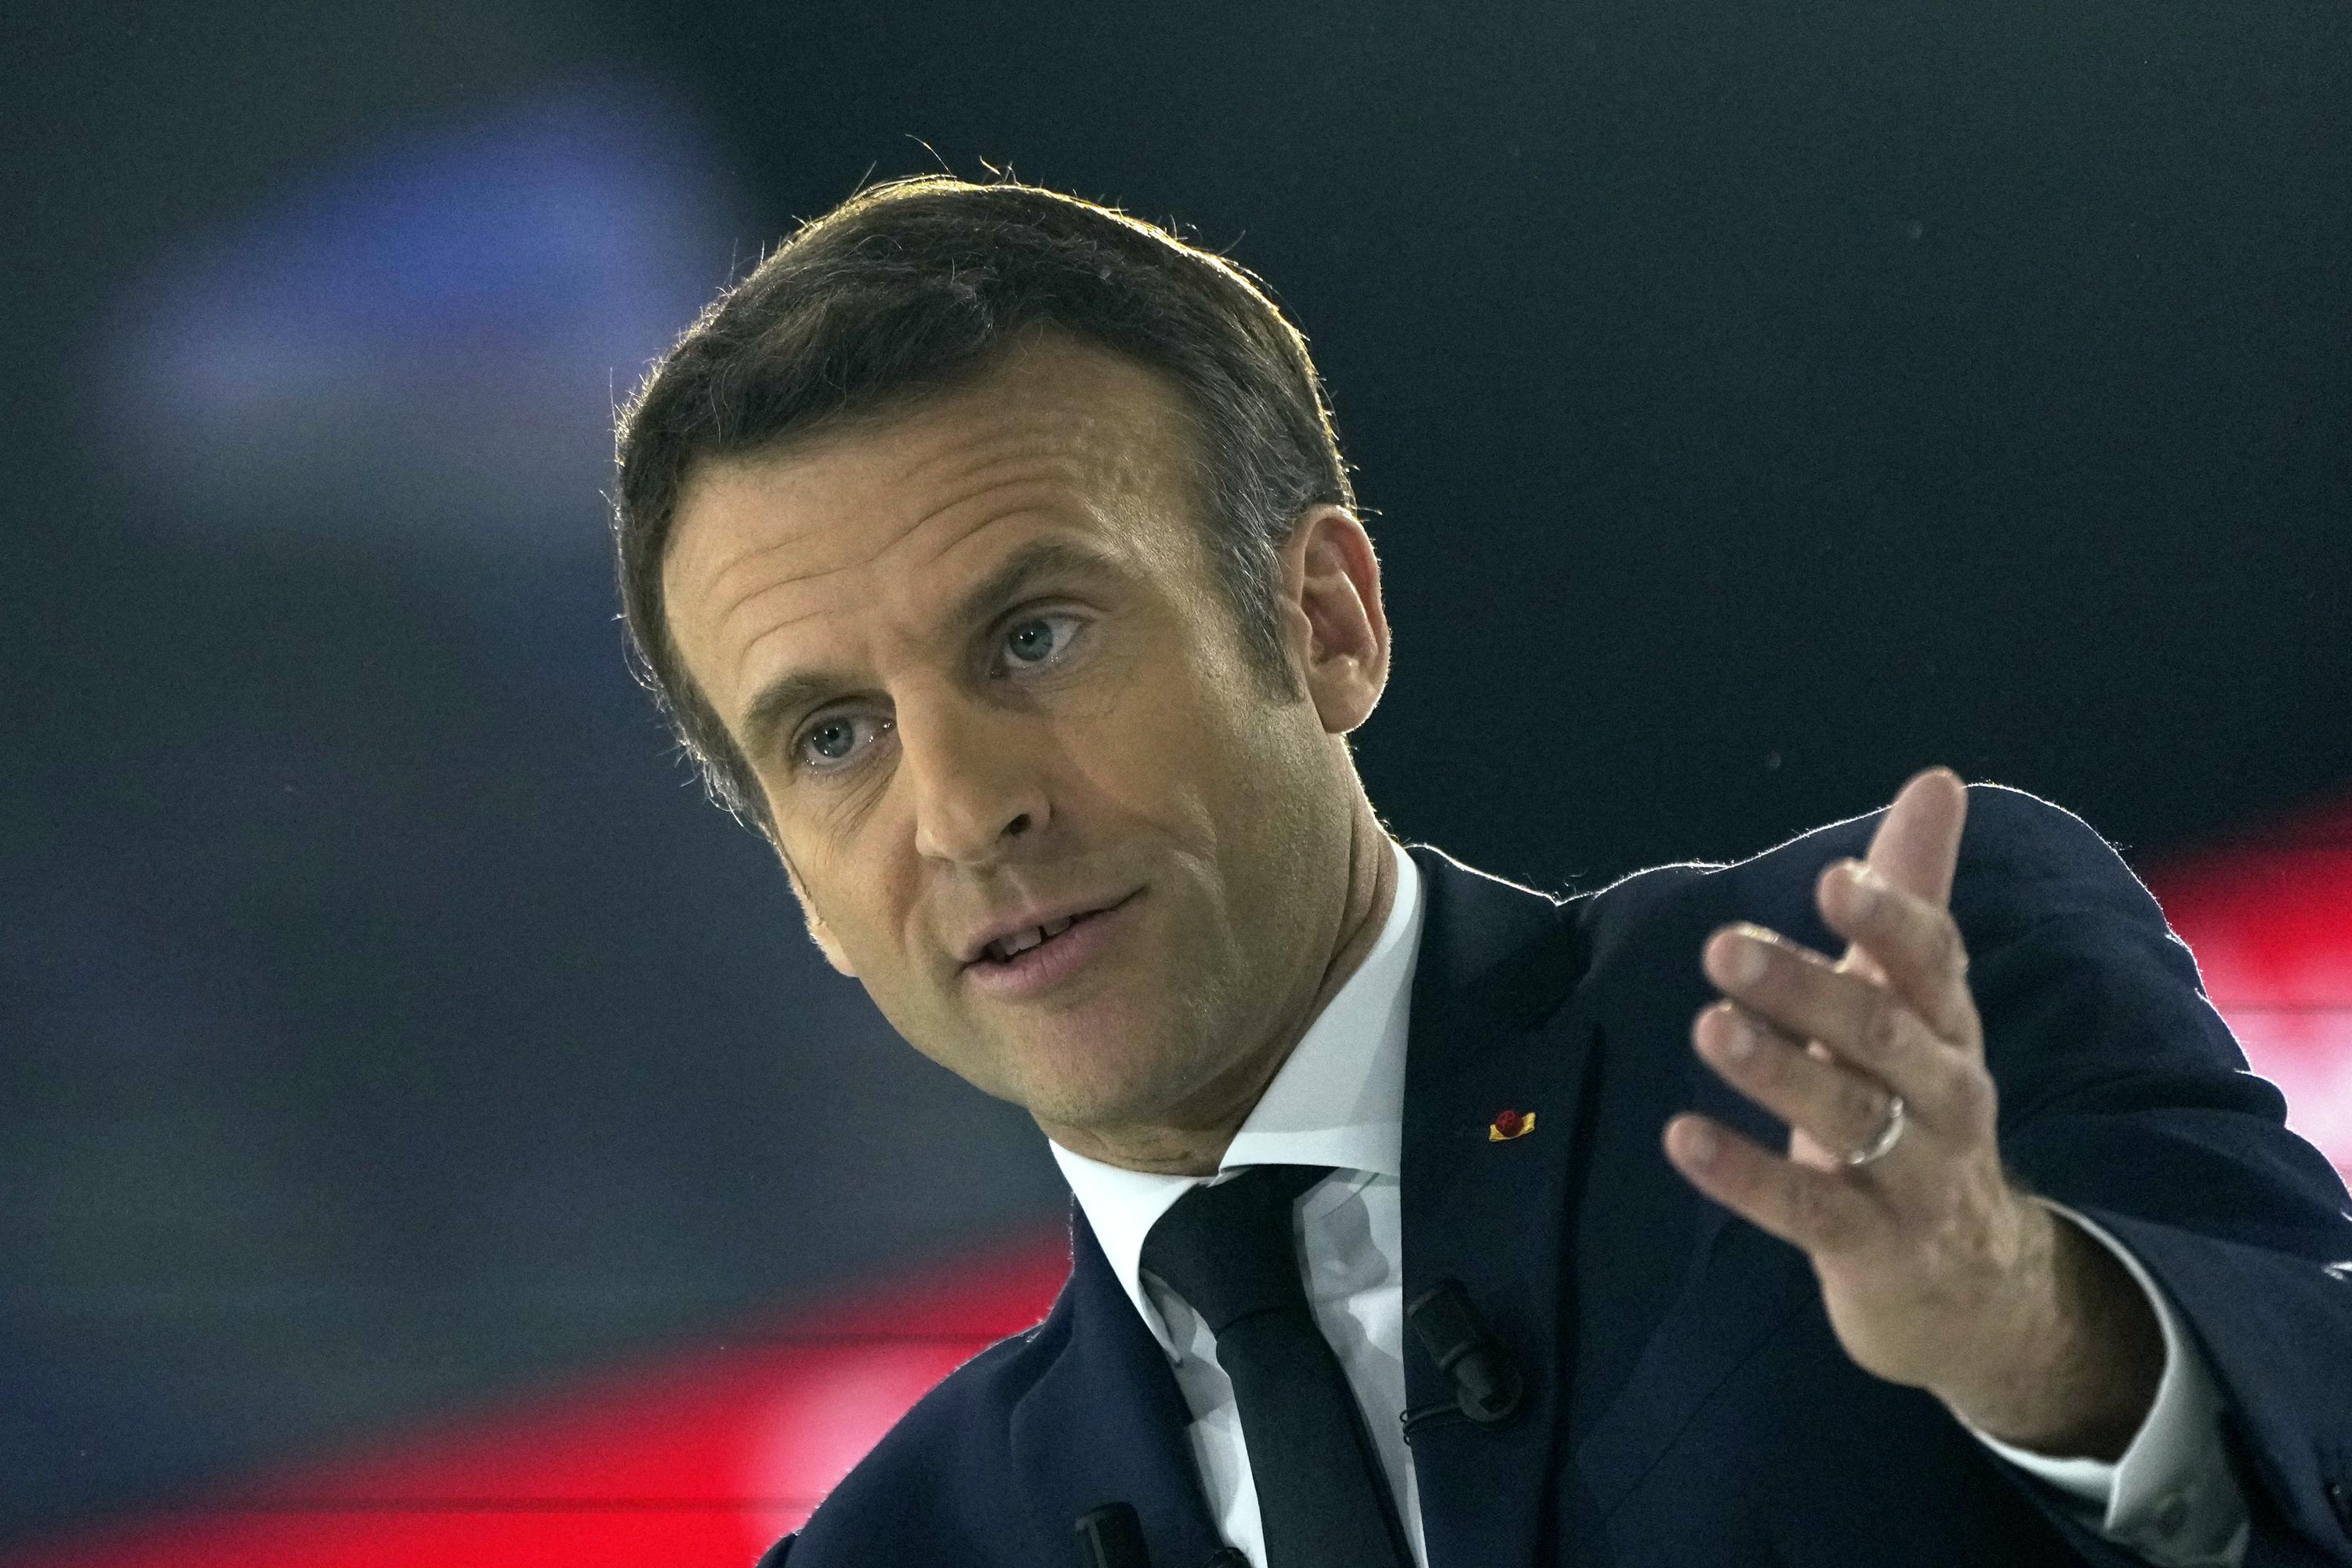 Macron mantiene la primera gran racha;  Adversarios plantean el ‘caso McKinsey’